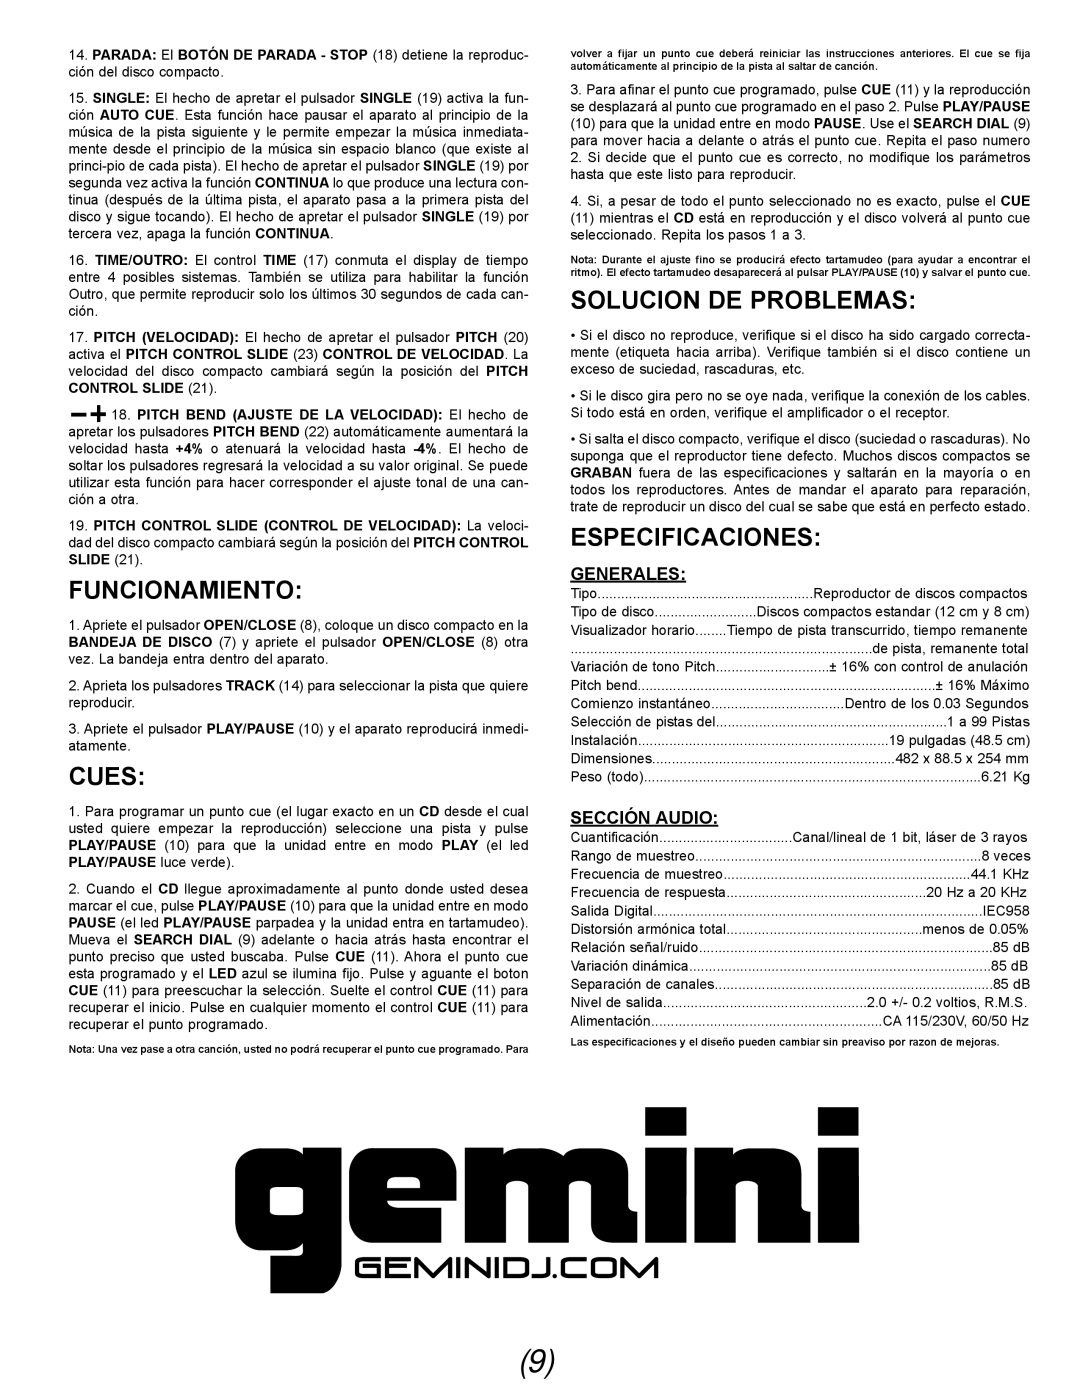 Gemini CDX-02G manual Funcionamiento, Solucion De Problemas, Especificaciones, Generales, Sección Audio, Cues 